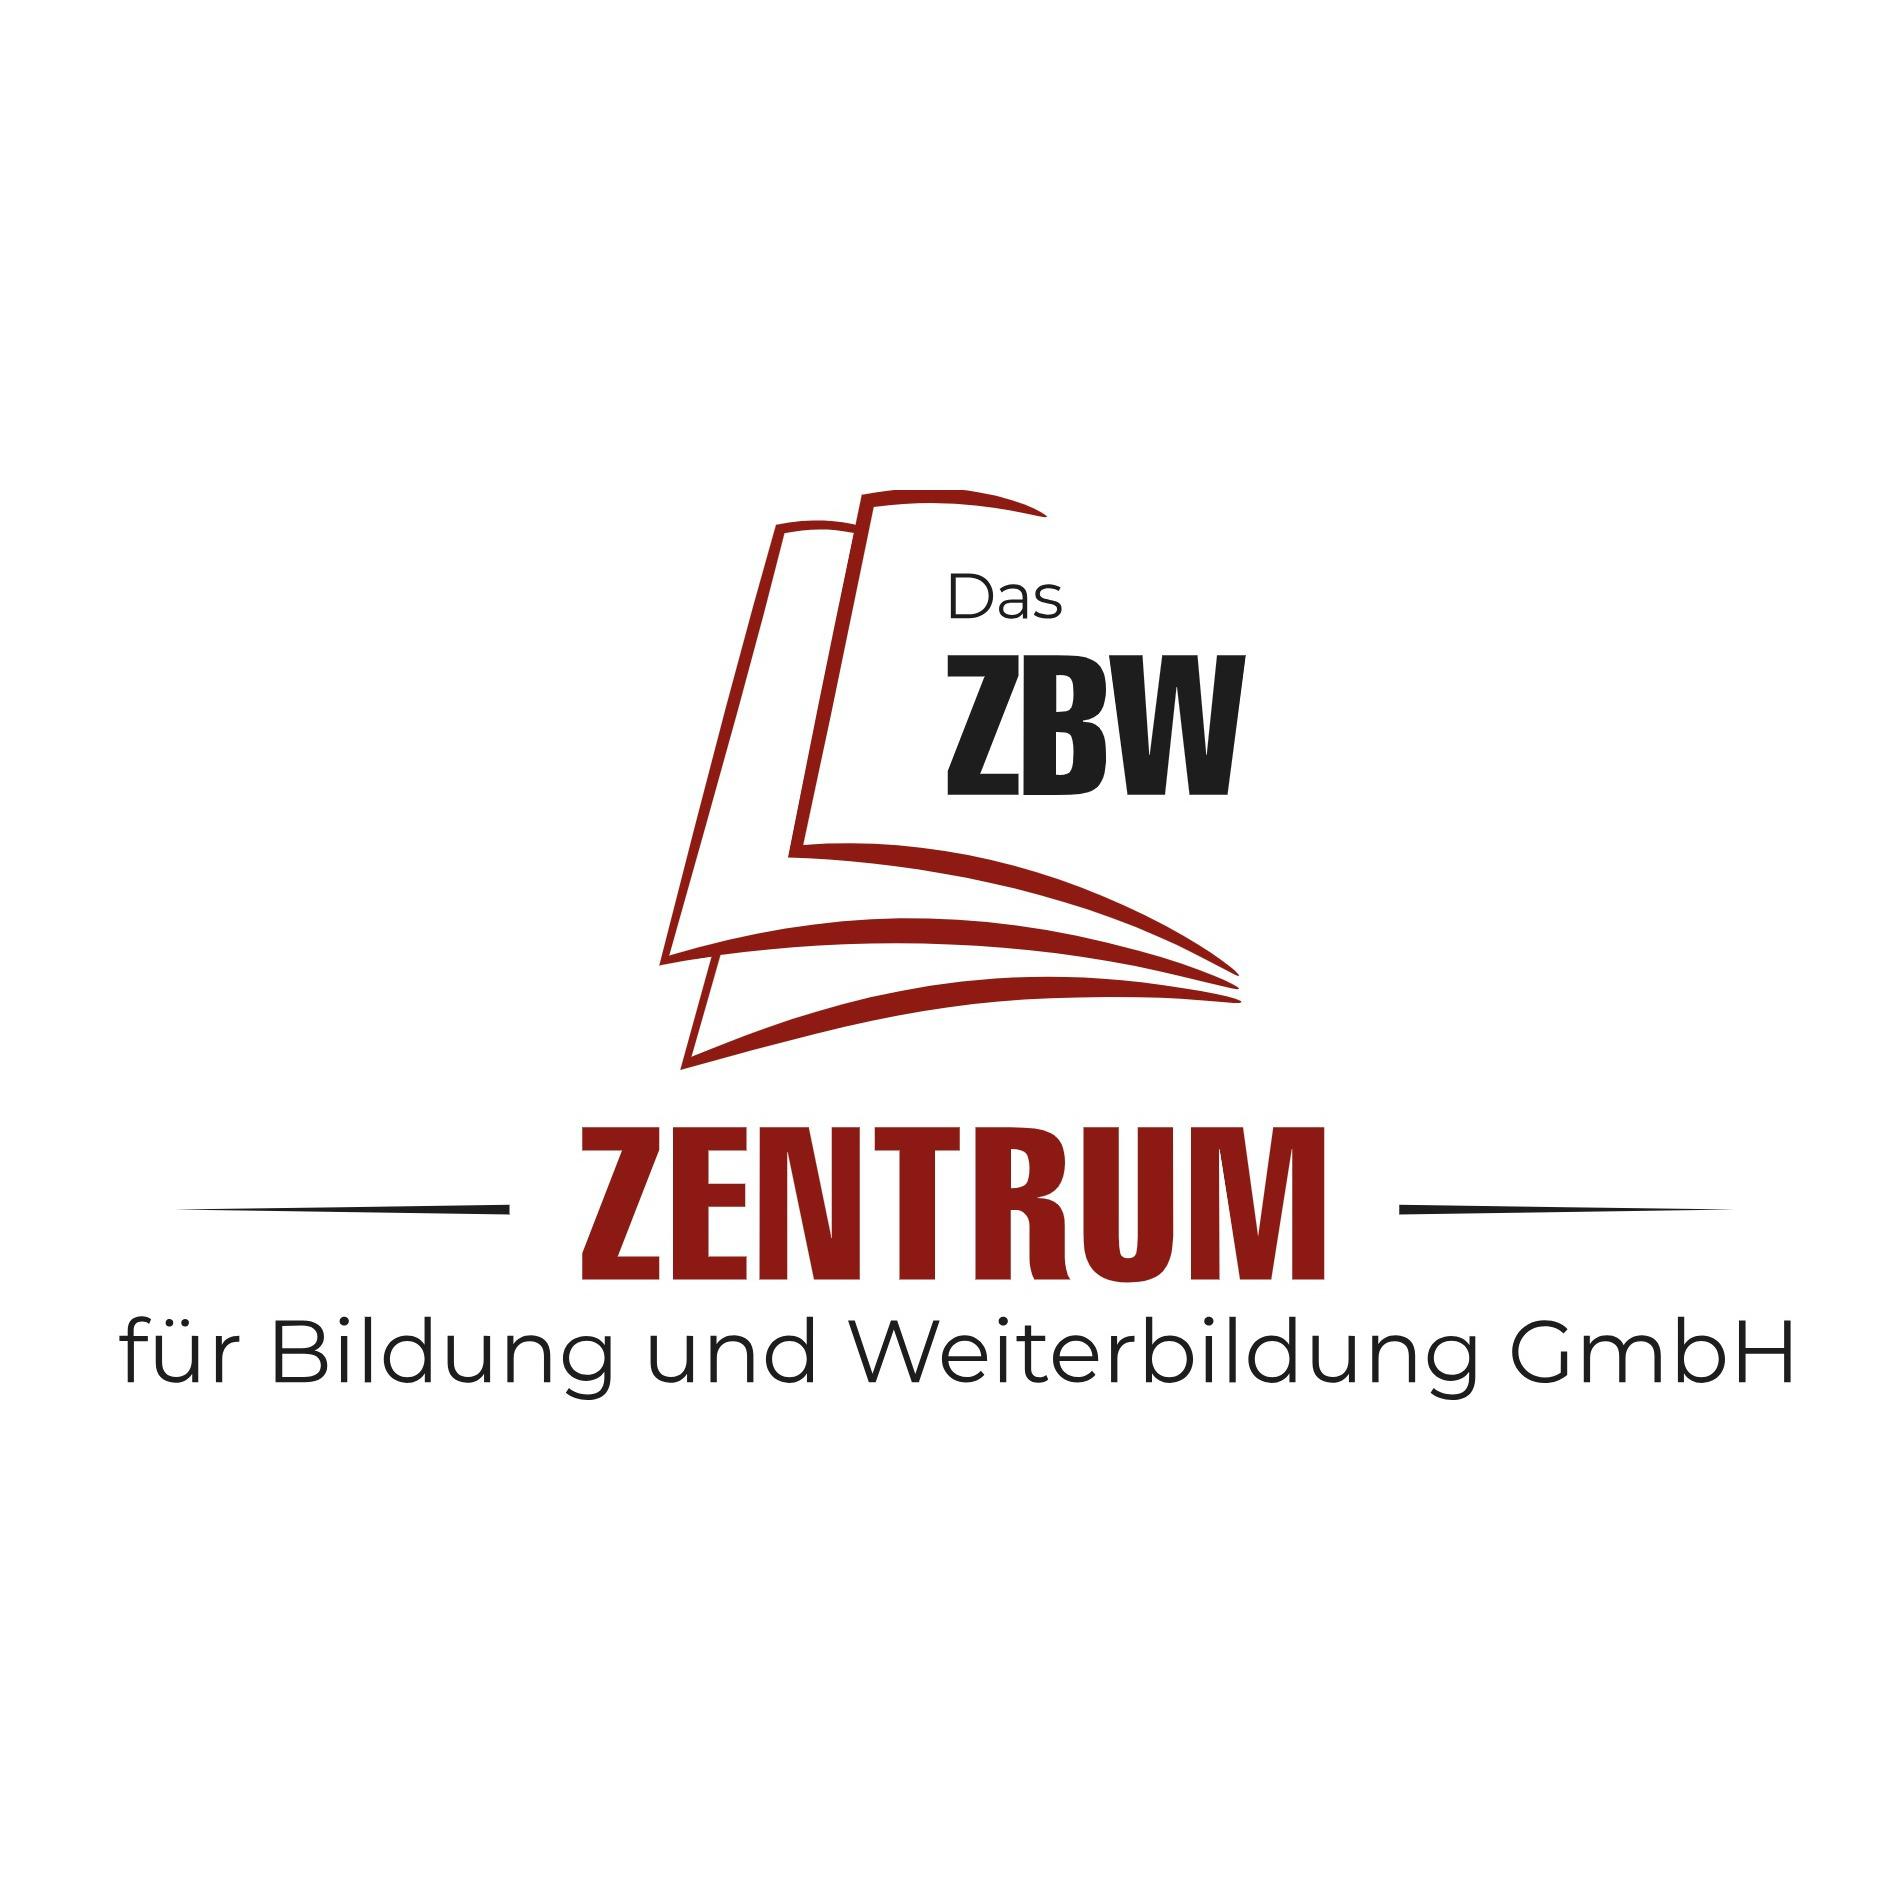 Das ZBW Zentrum für Bildung und Weiterbildung GmbH Logo